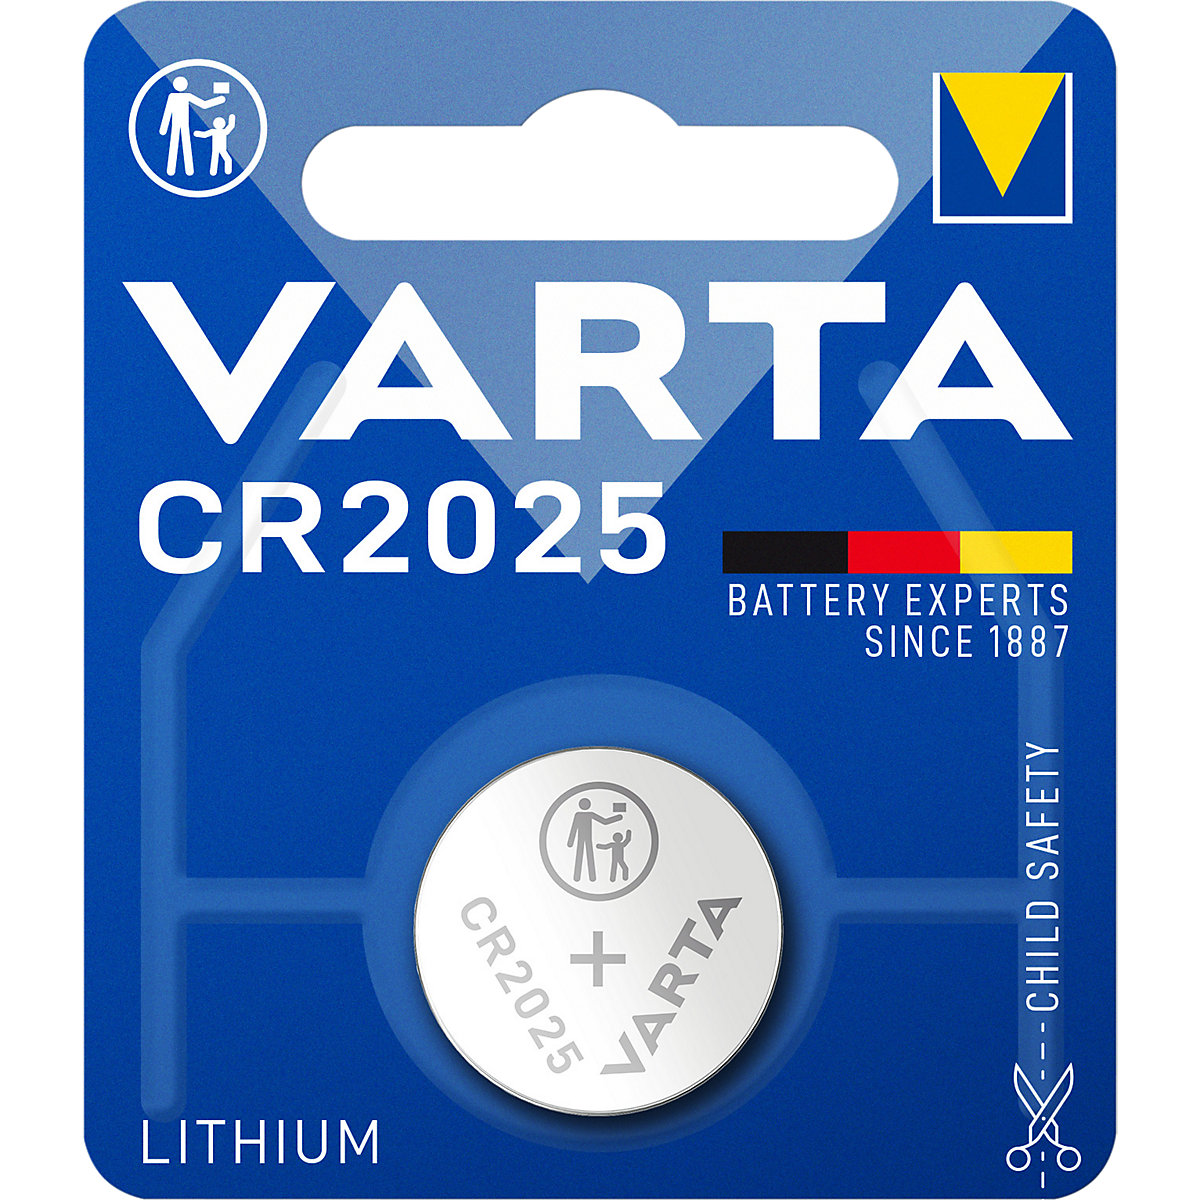 Gumbasta baterija LITHIUM – VARTA